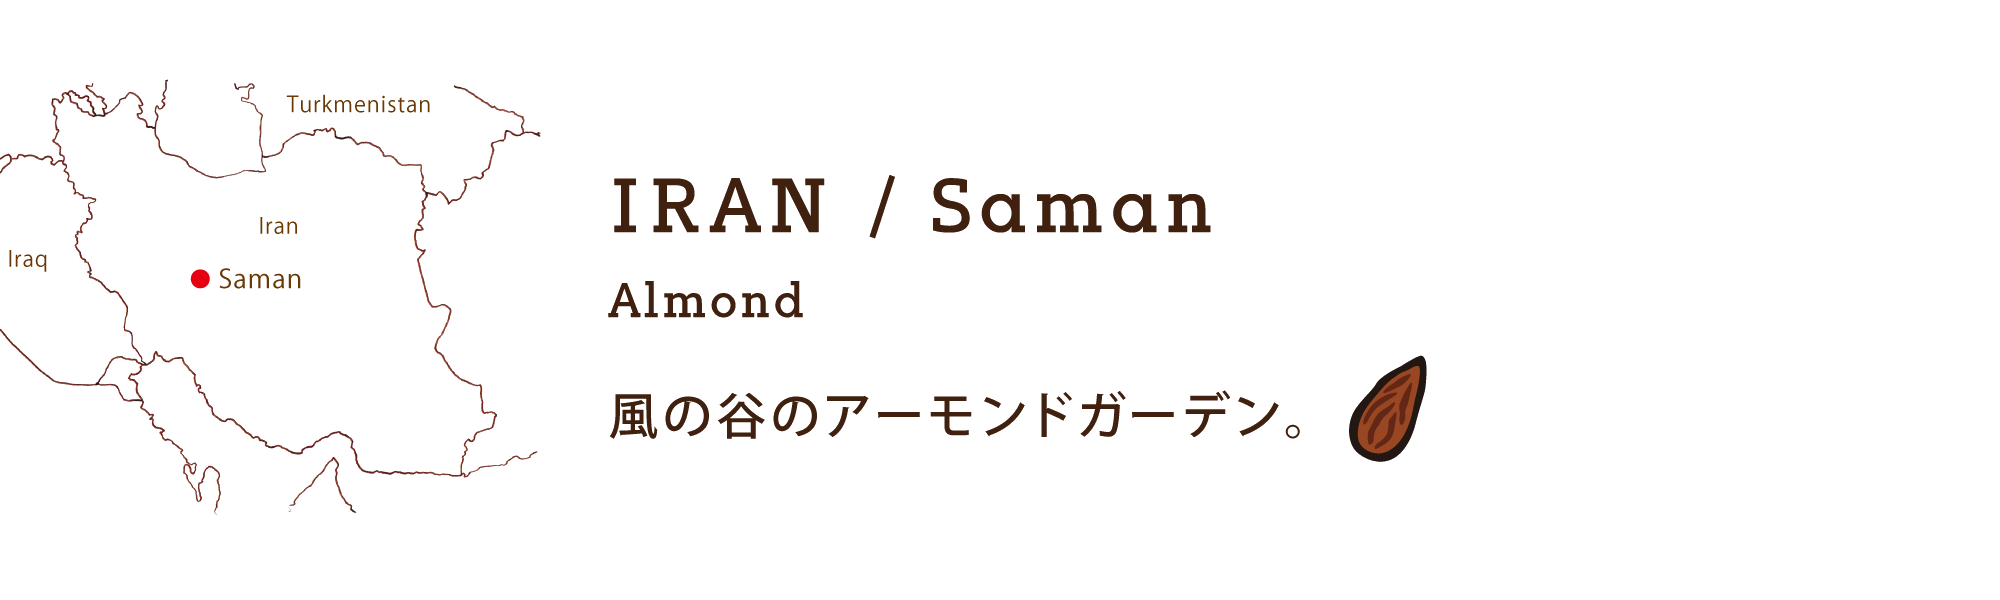 IRAN / Saman